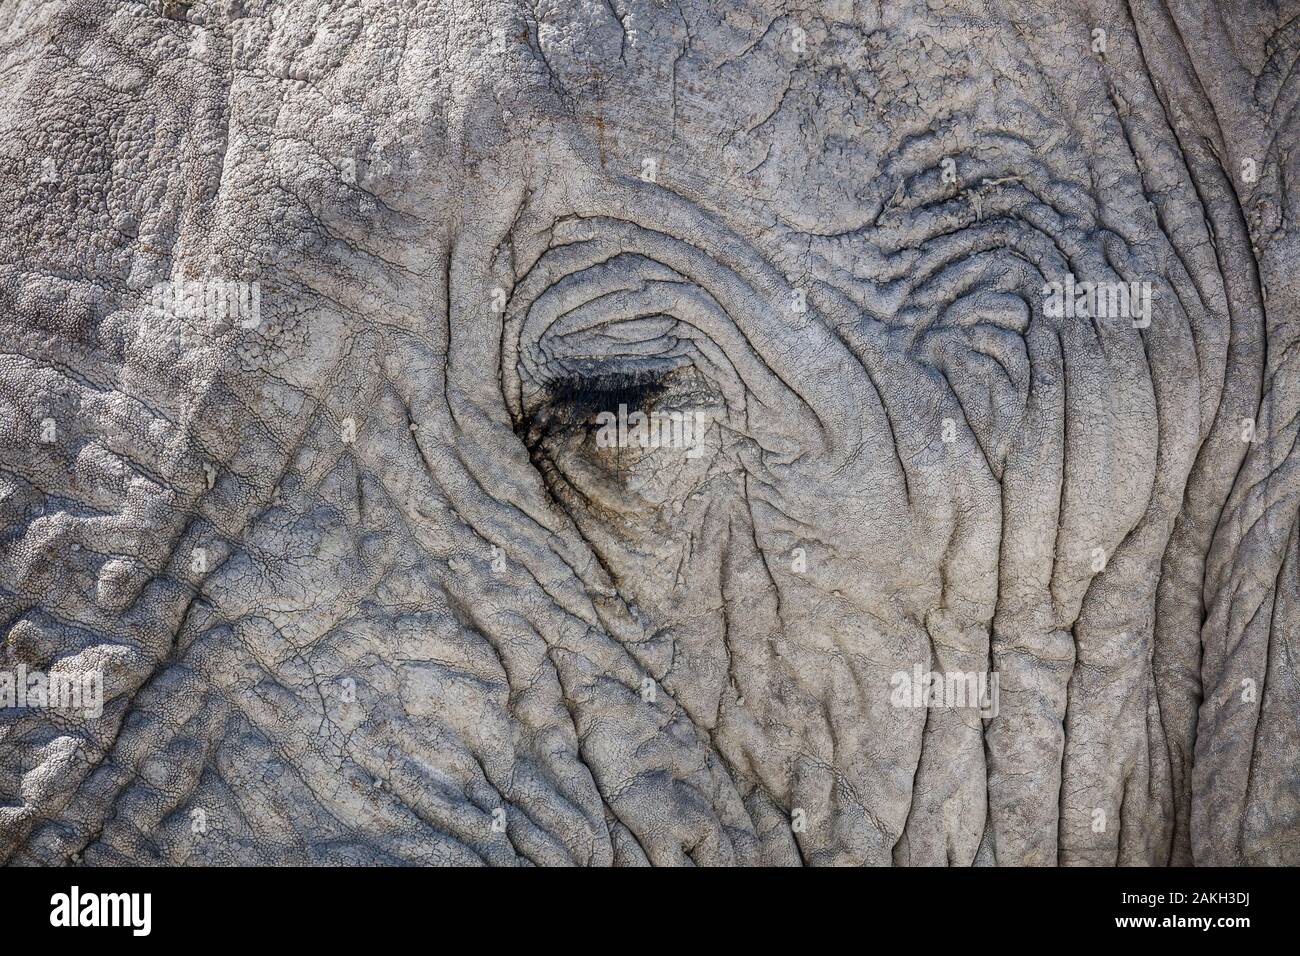 Namibia, Oshikoto province, Etosha National Park, african bush elephant eye (Loxodonta africana) Stock Photo